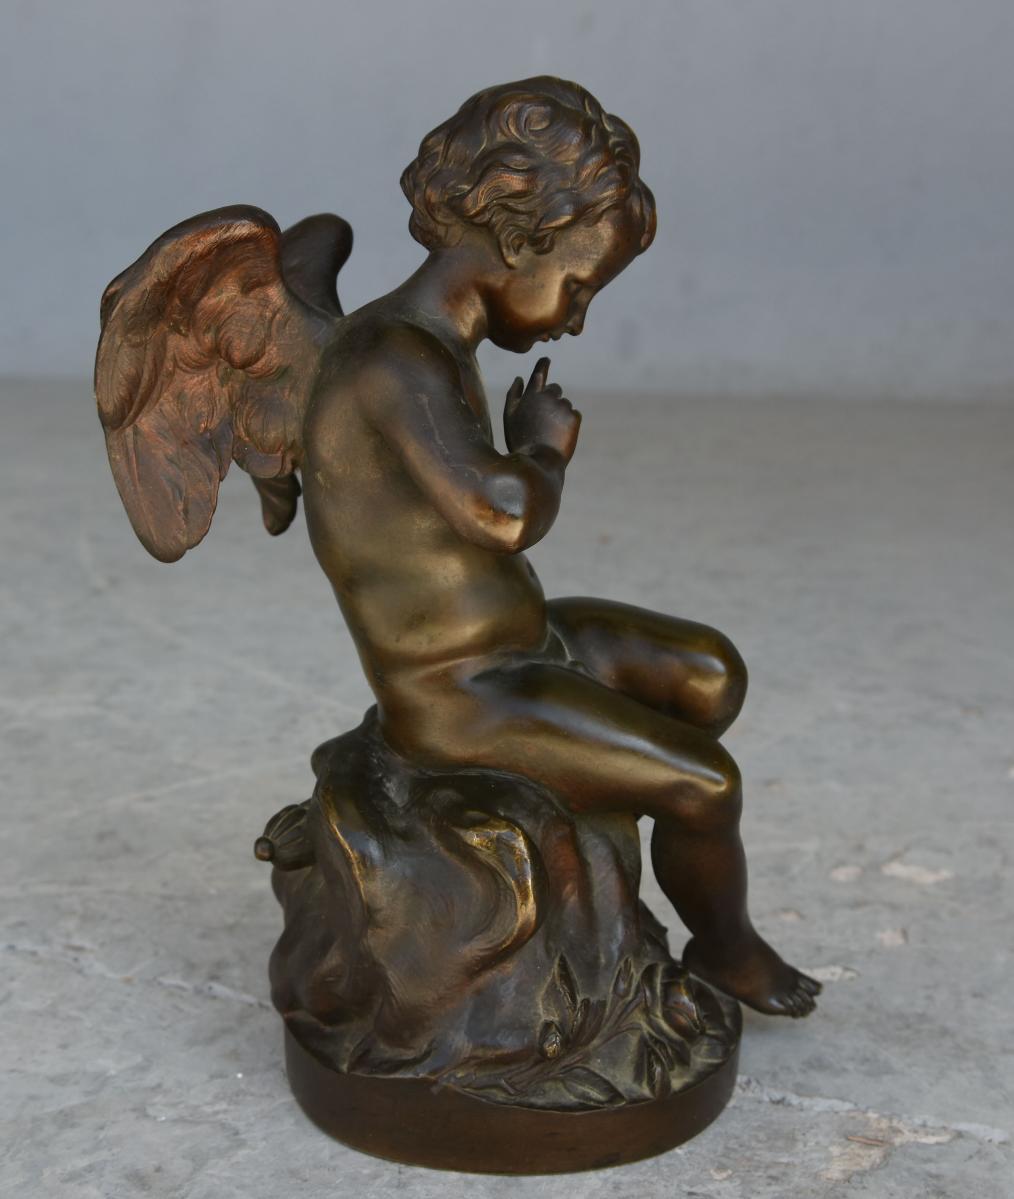 Cupidon fin XIXe siècle en bronze patiné doré dimension : 27 cm de haut par 15 cm par 12 cm. Fondateur Richaud et Cie à Marseille. Modèle inspiré de Falconet.